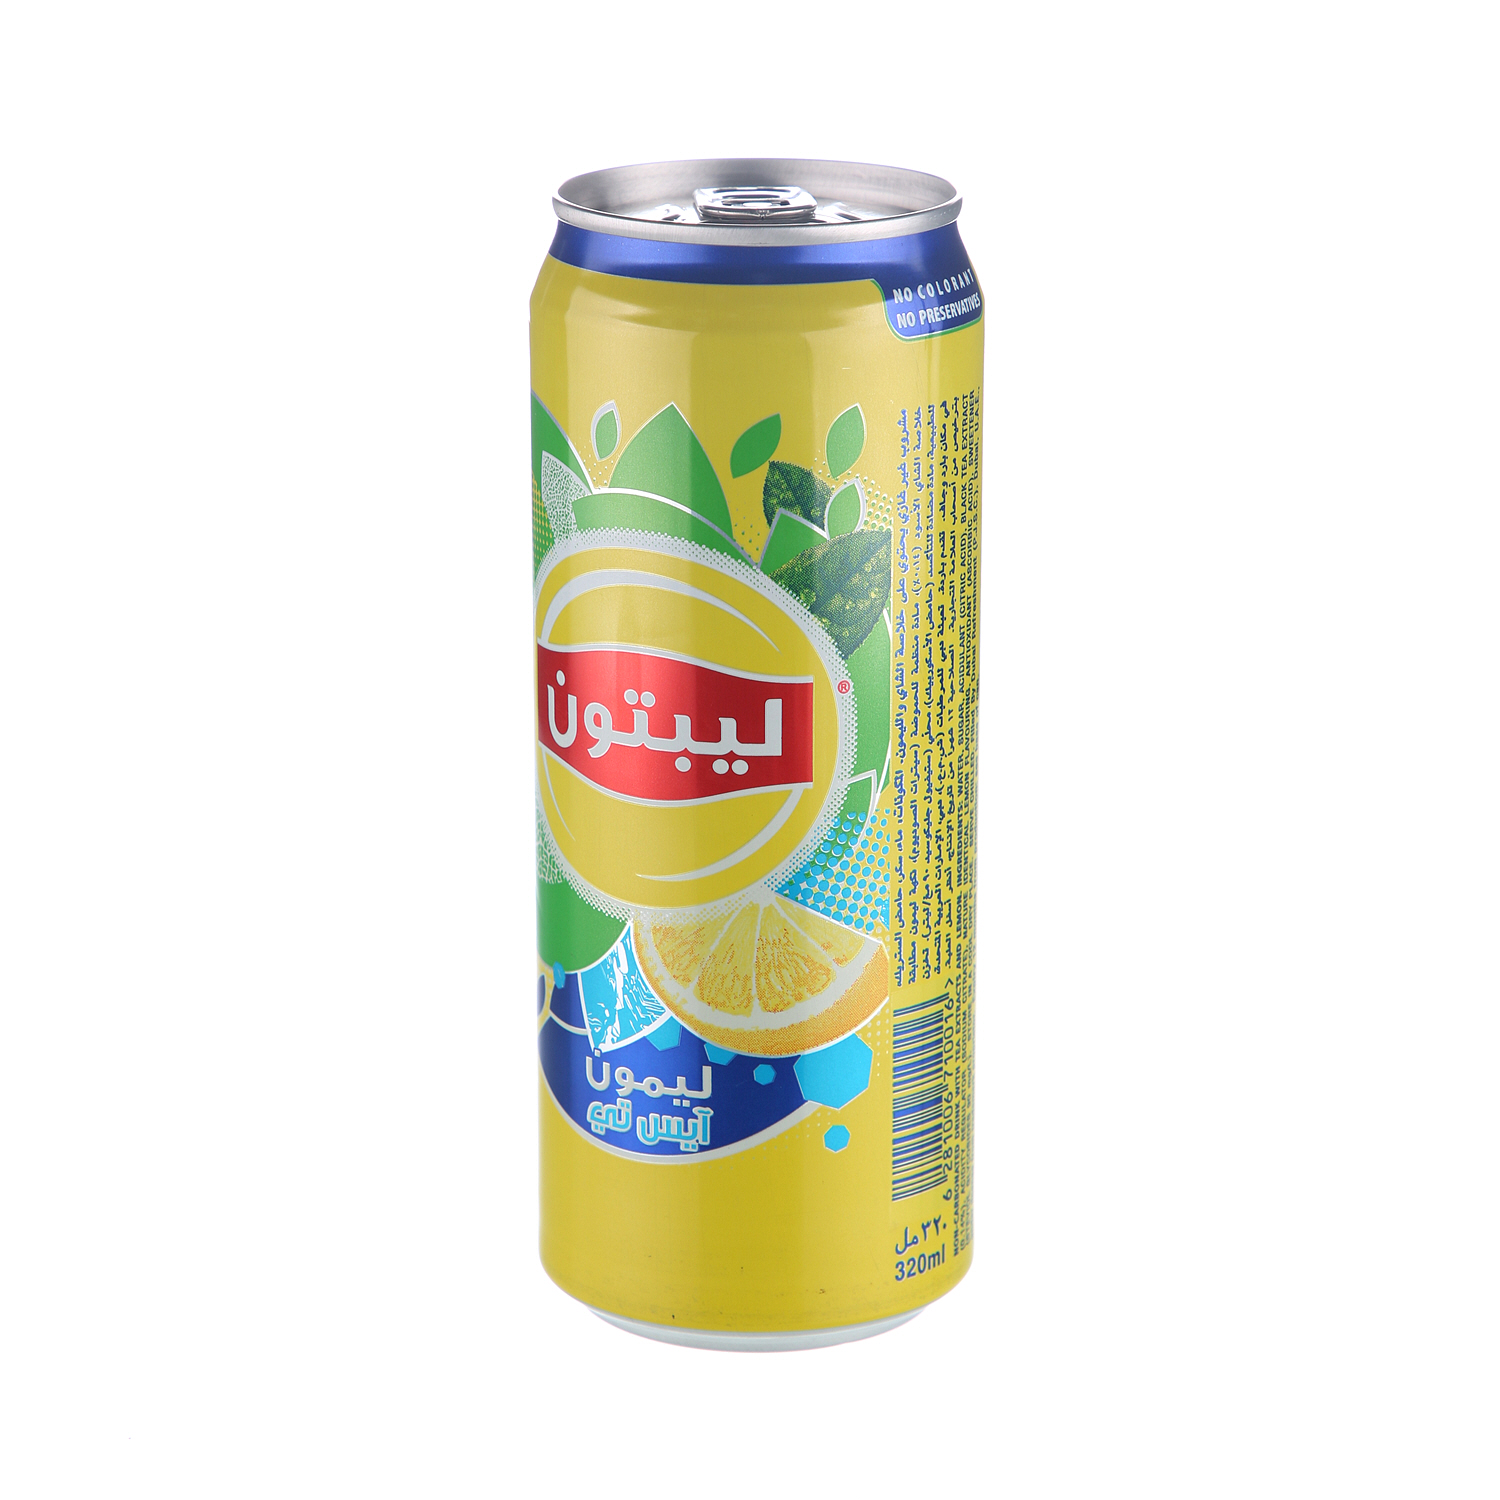 Lipton Ice Tea Lemon 320 ml